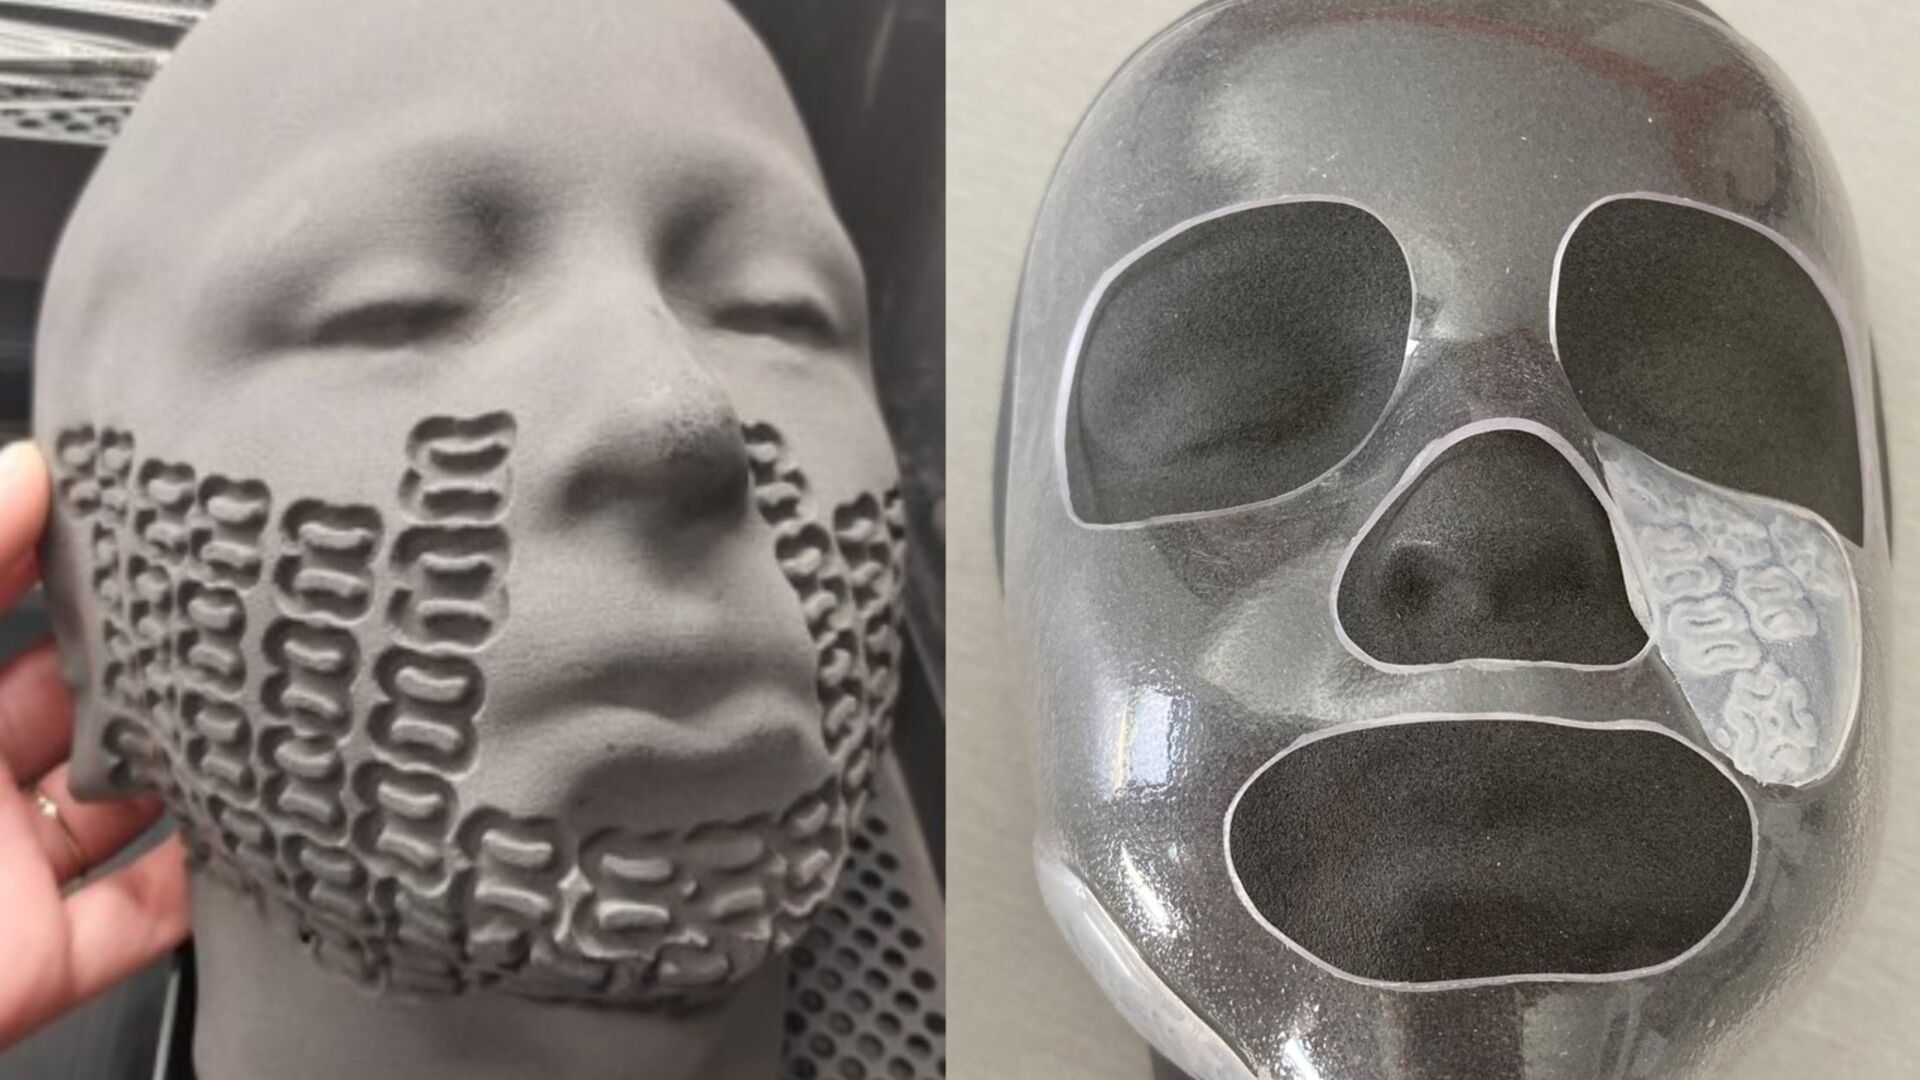 Le innovative maschere facciali 3D per le ustioni dei bambini